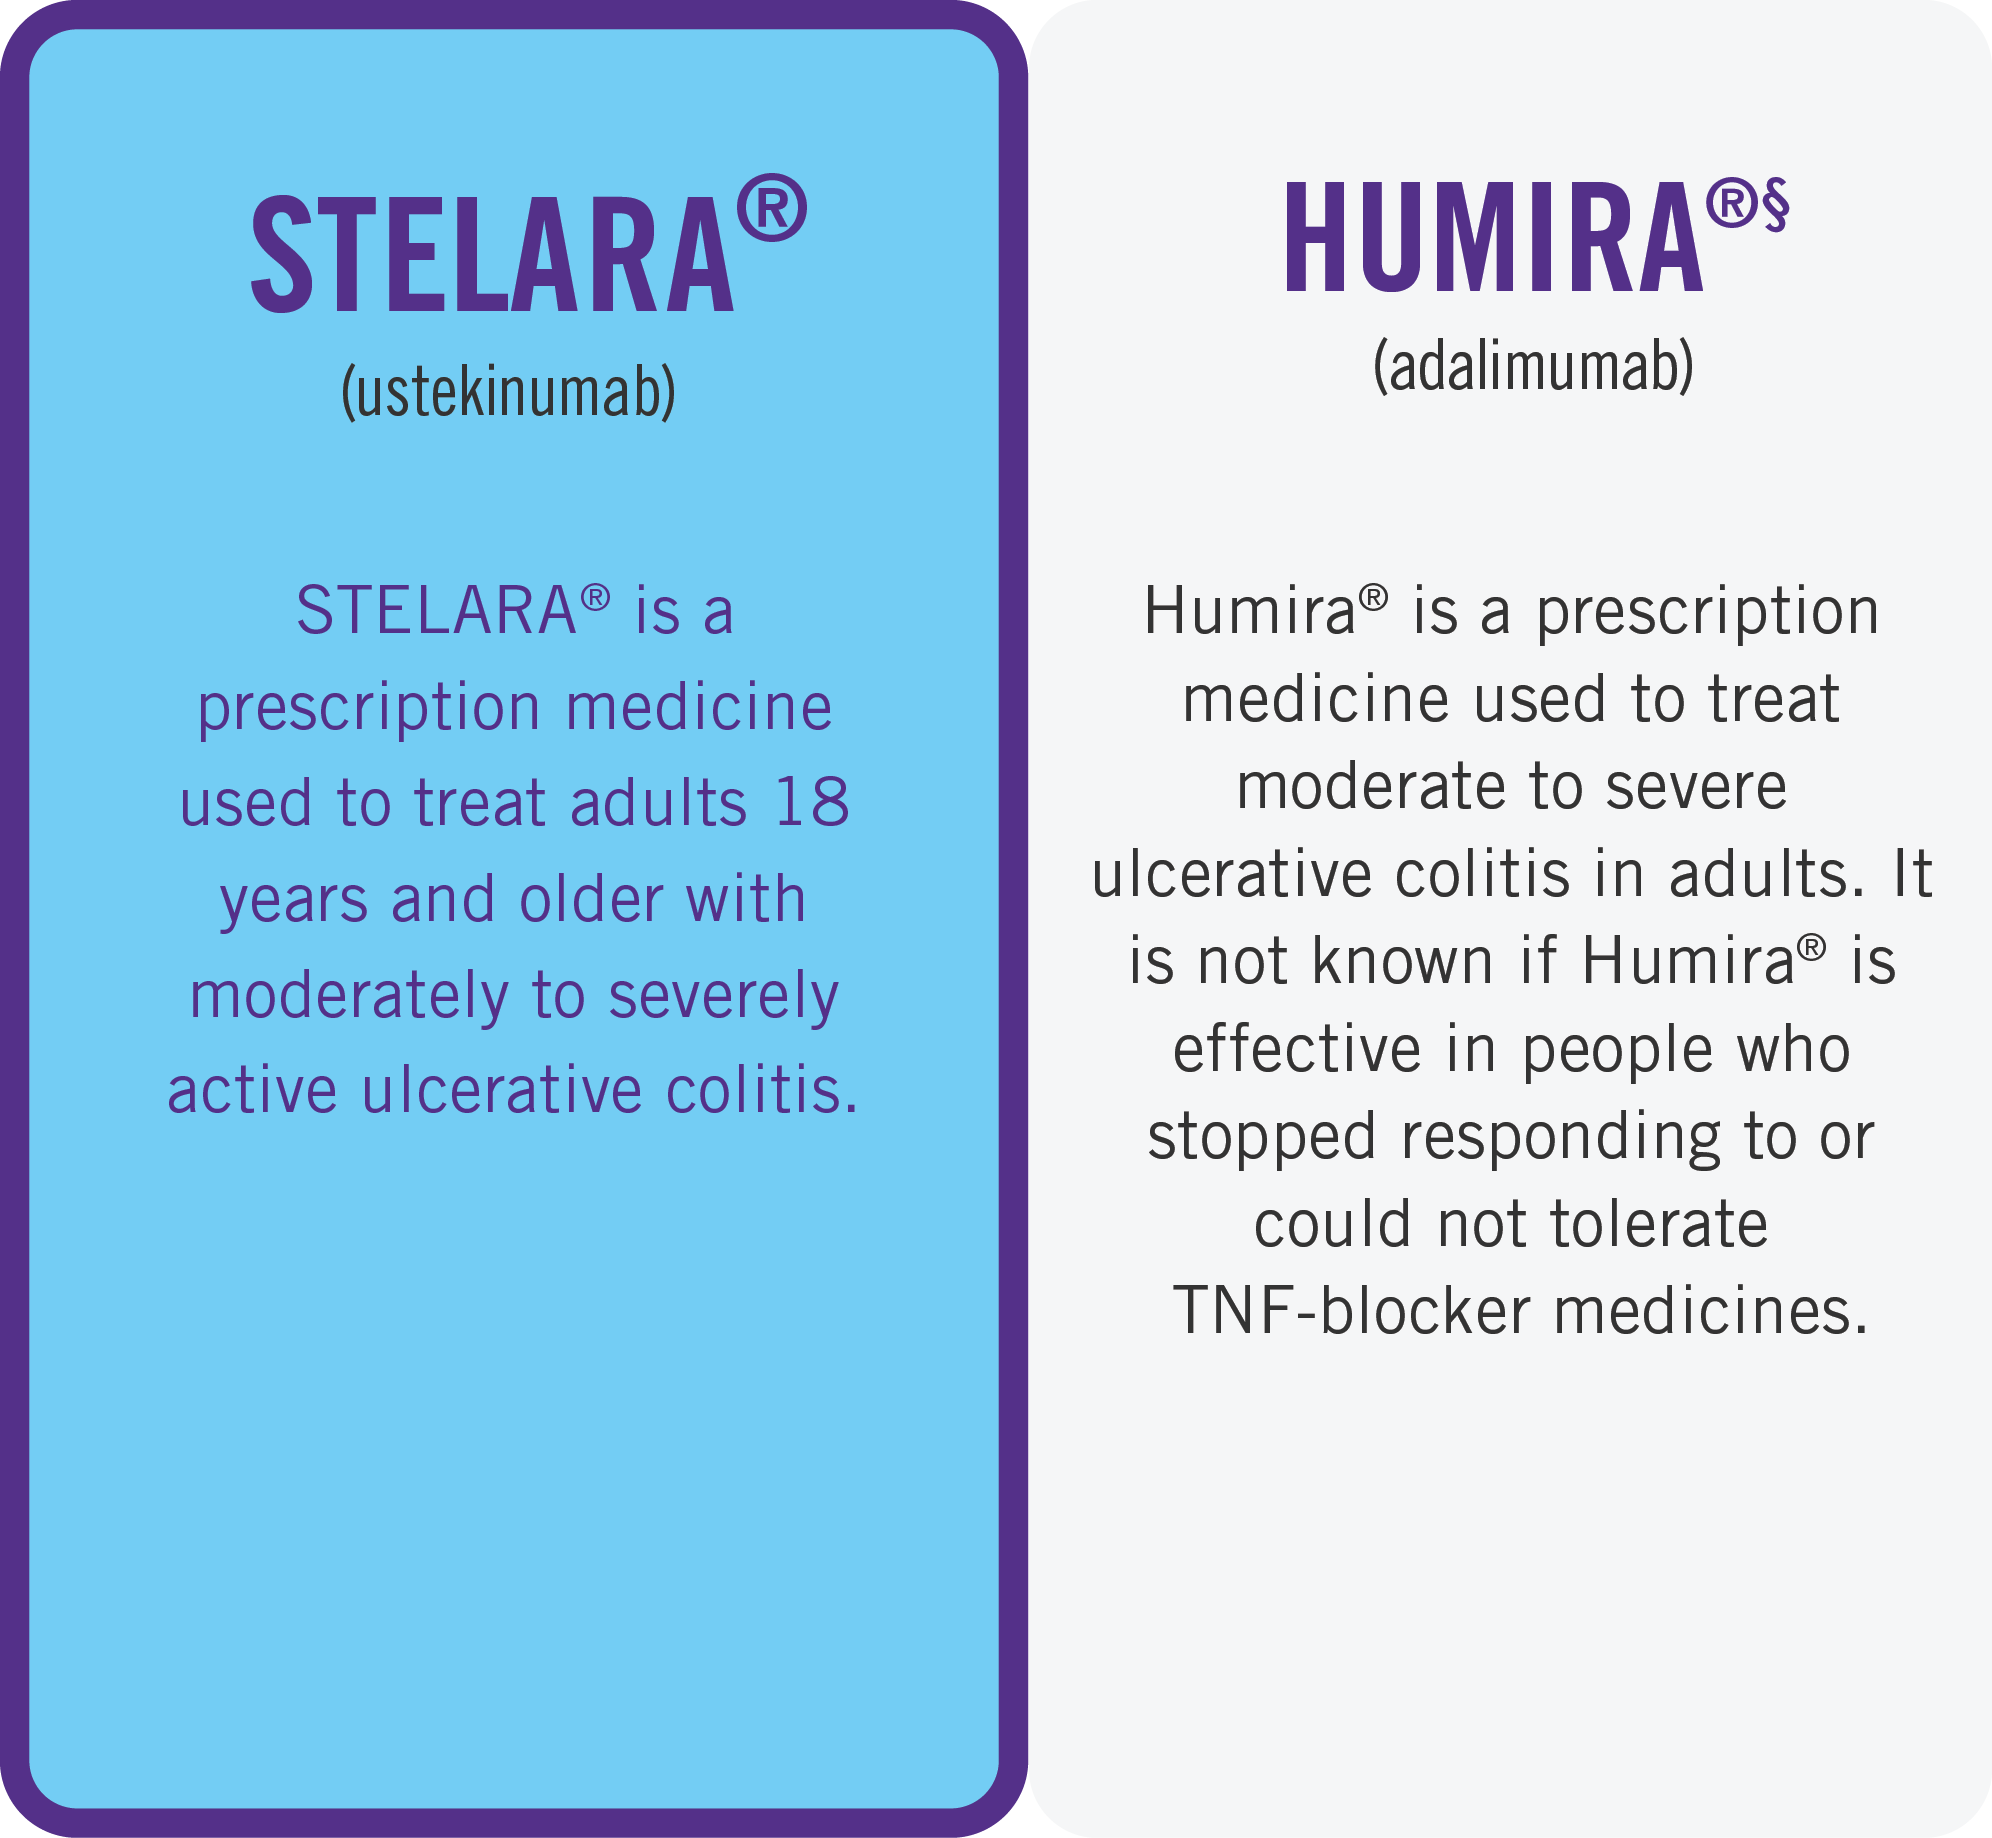 Indication difference of STELARA® (ustekinumab) compared to HUMIRA® (adalimumab)